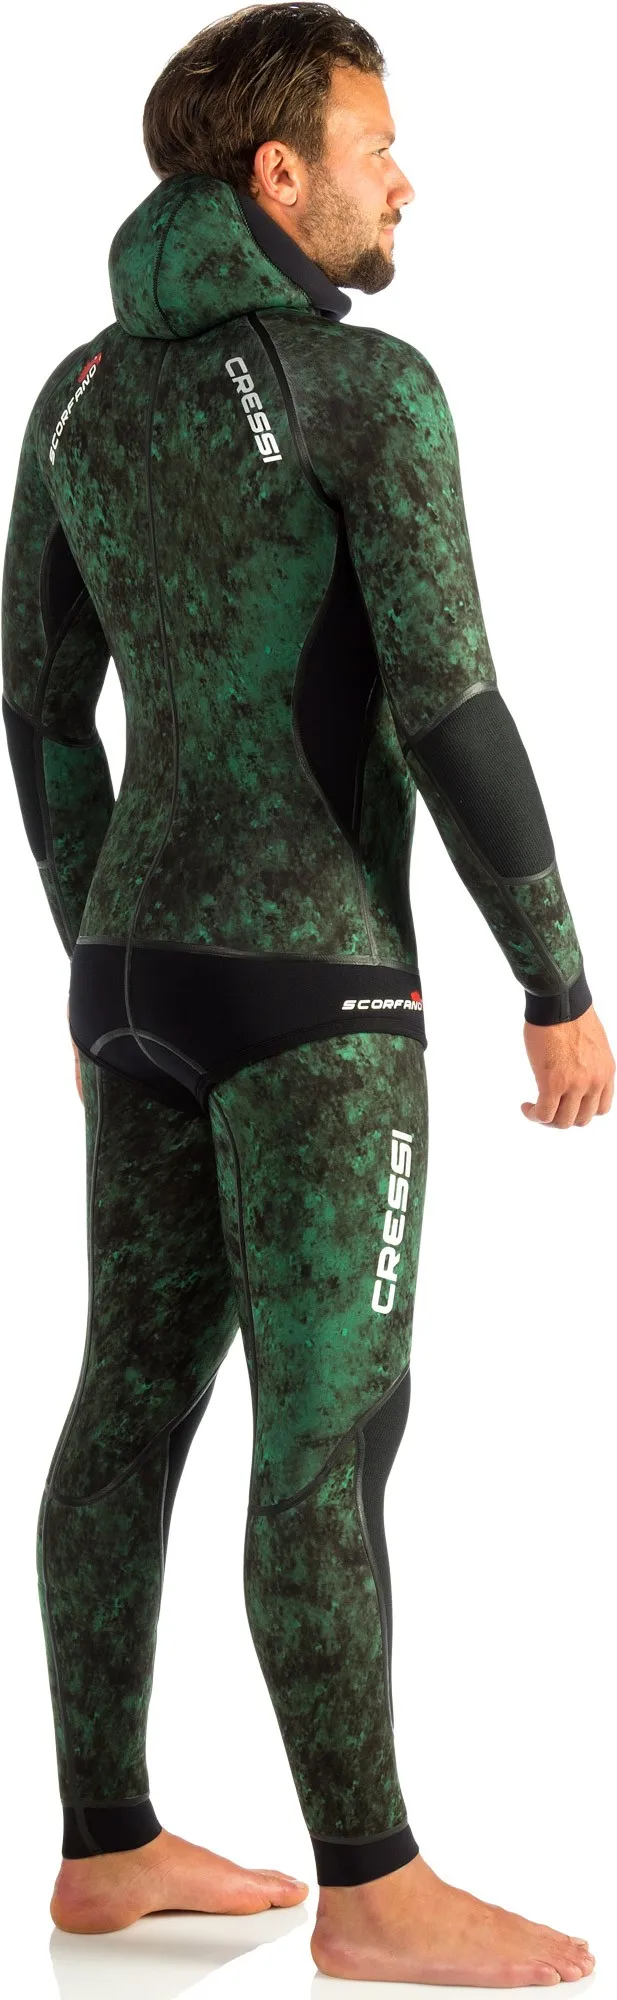 Cressi SCORFANO 5-7 мм гидрокостюм водные виды спорта, серфинг, подводное плавание